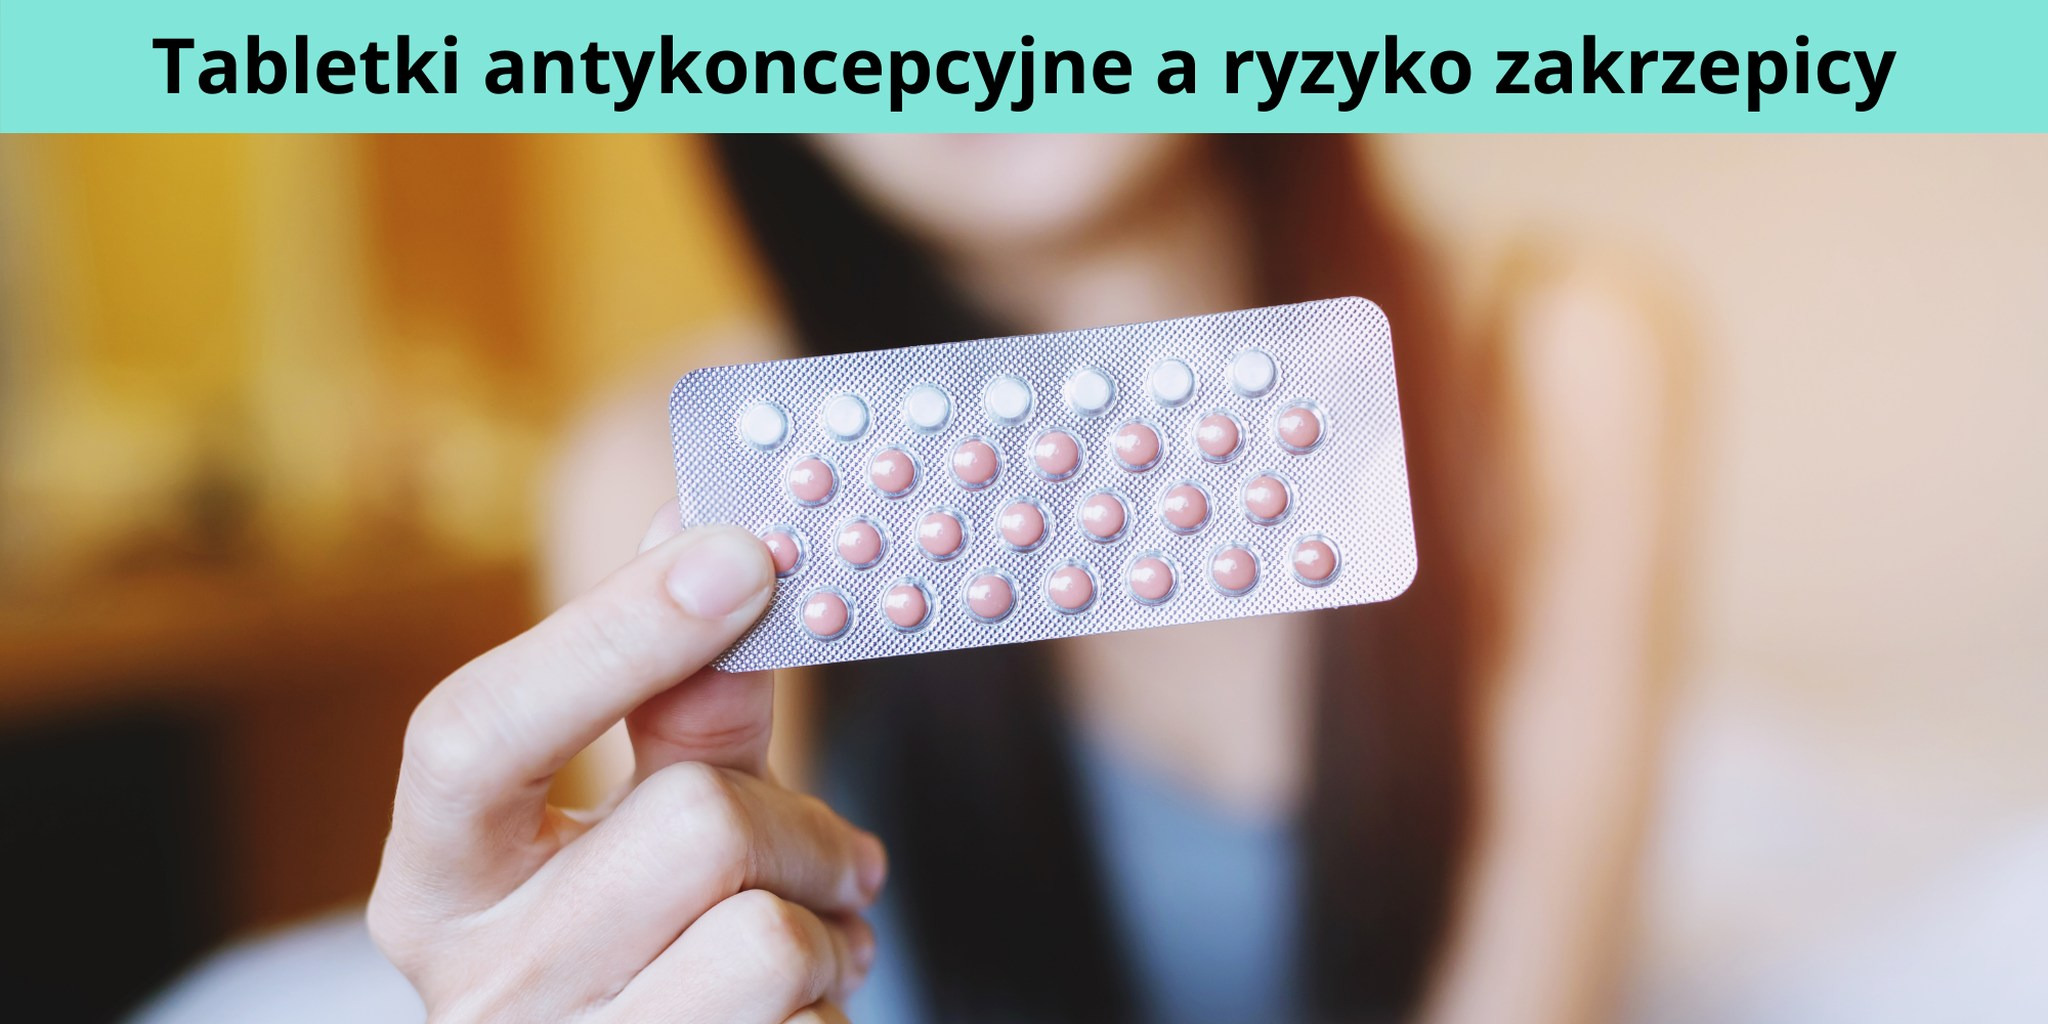 Tabletki antykoncepcyjne a ryzyko zakrzepicy